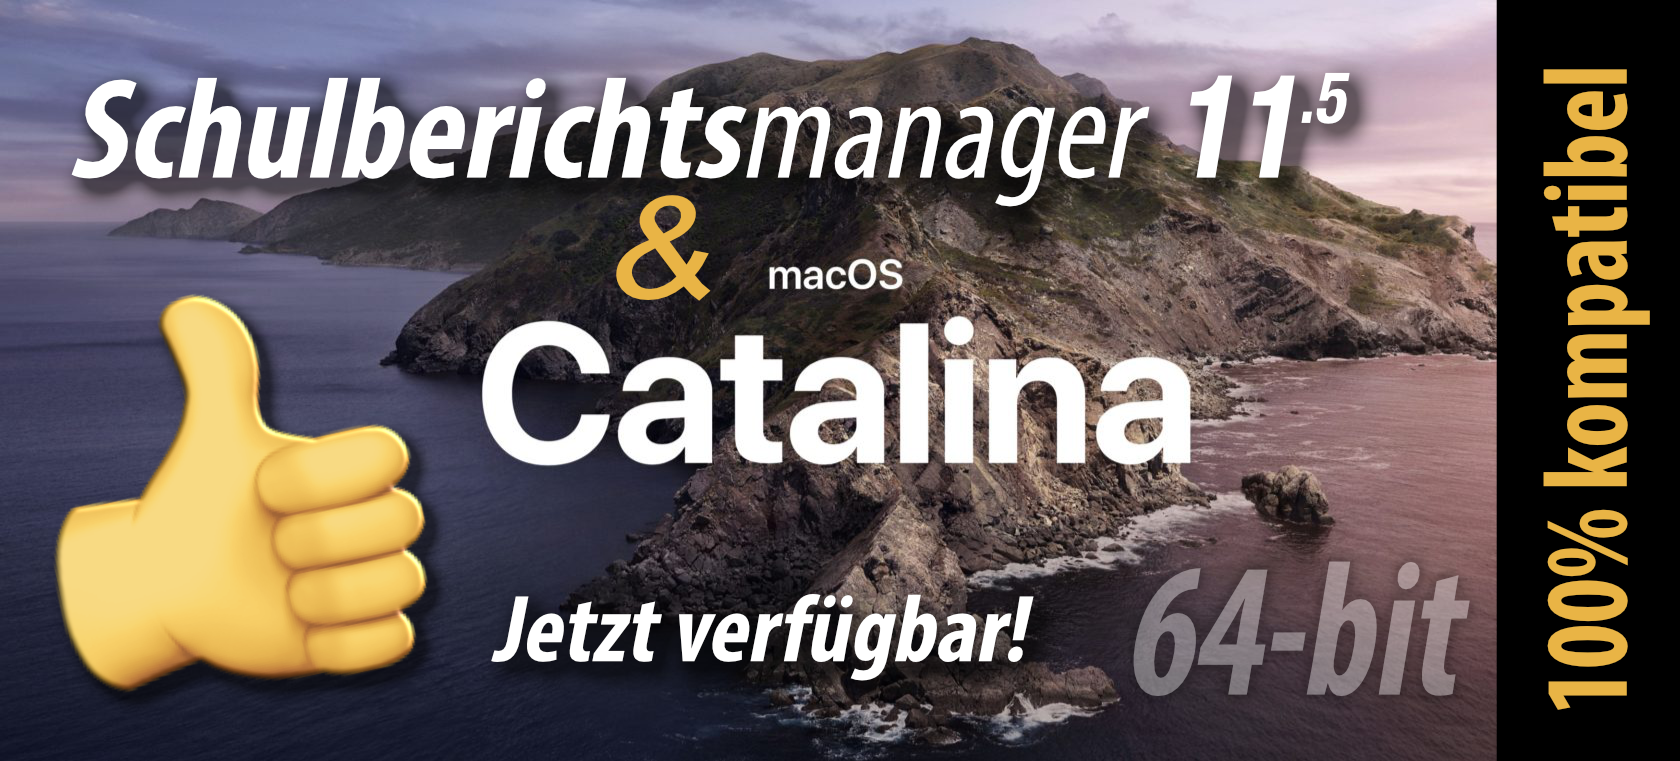 Schulberichtsmanager für macOS 10.15 Catalina